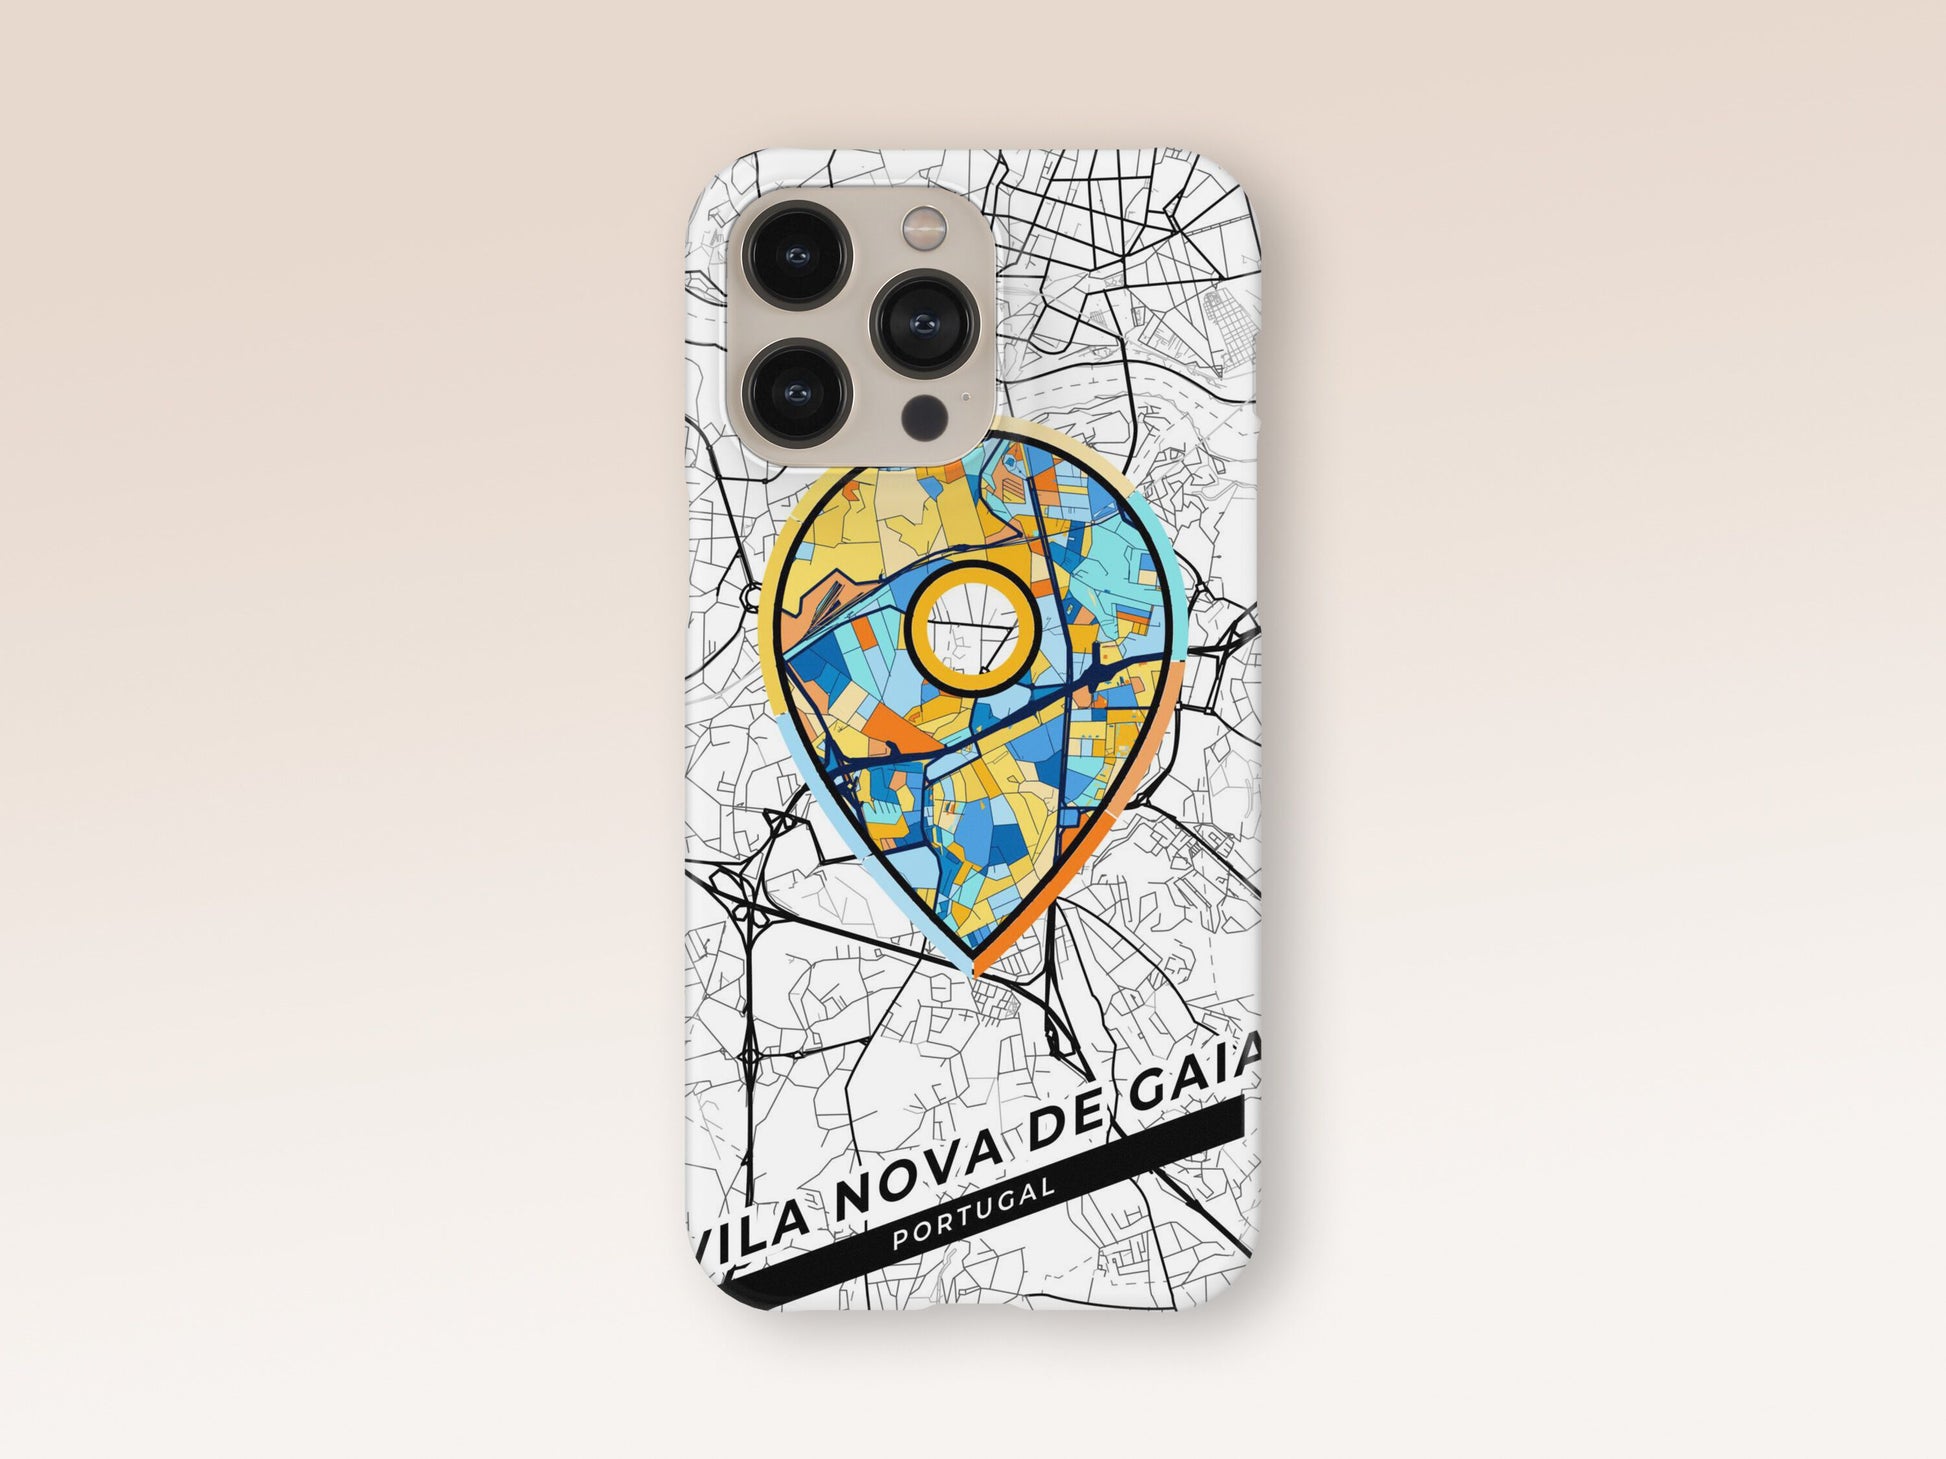 Vila Nova De Gaia Portugal slim phone case with colorful icon 1